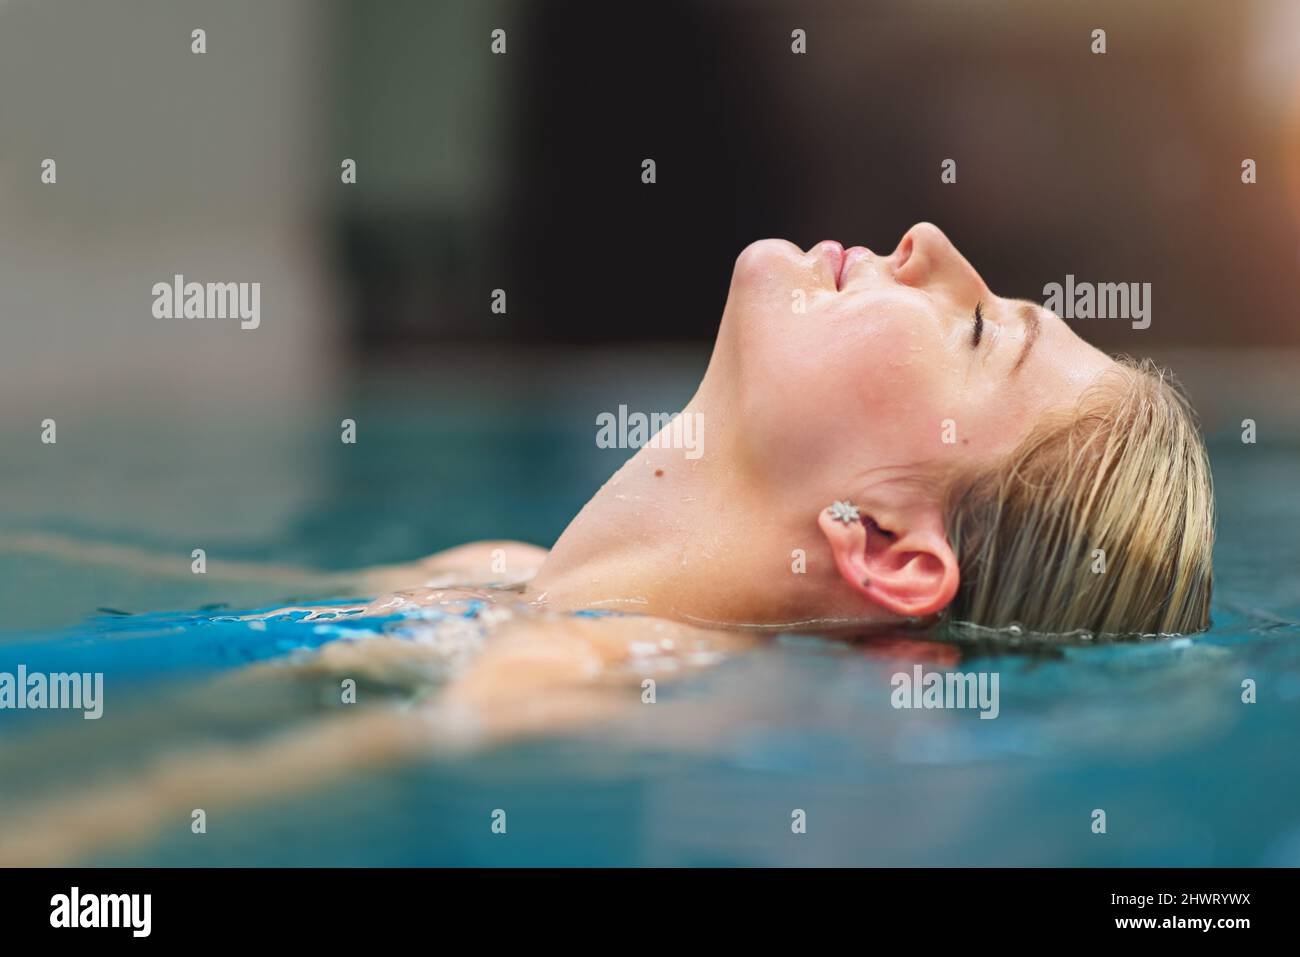 Kühlen Sie den Körper, beruhigen Sie den Geist. Aufnahme einer jungen Frau, die sich in einem Spa im Pool entspannen kann. Stockfoto